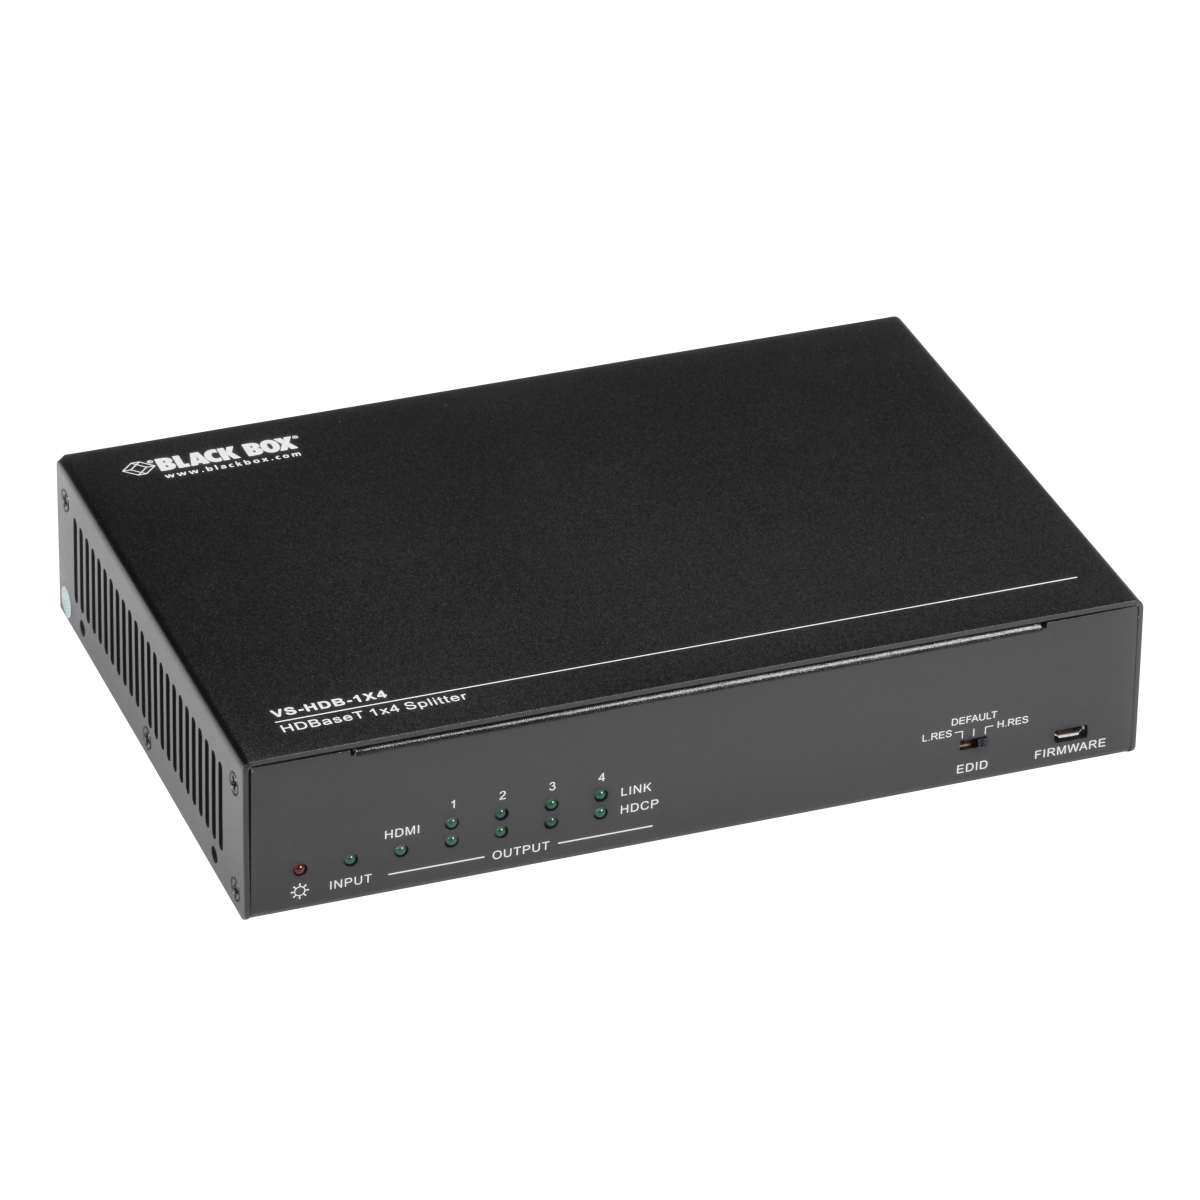 Picture of Black Box VS-HDB-1X4 1 x 4 4K UHD Smart EDID HDBase-T Video Splitter